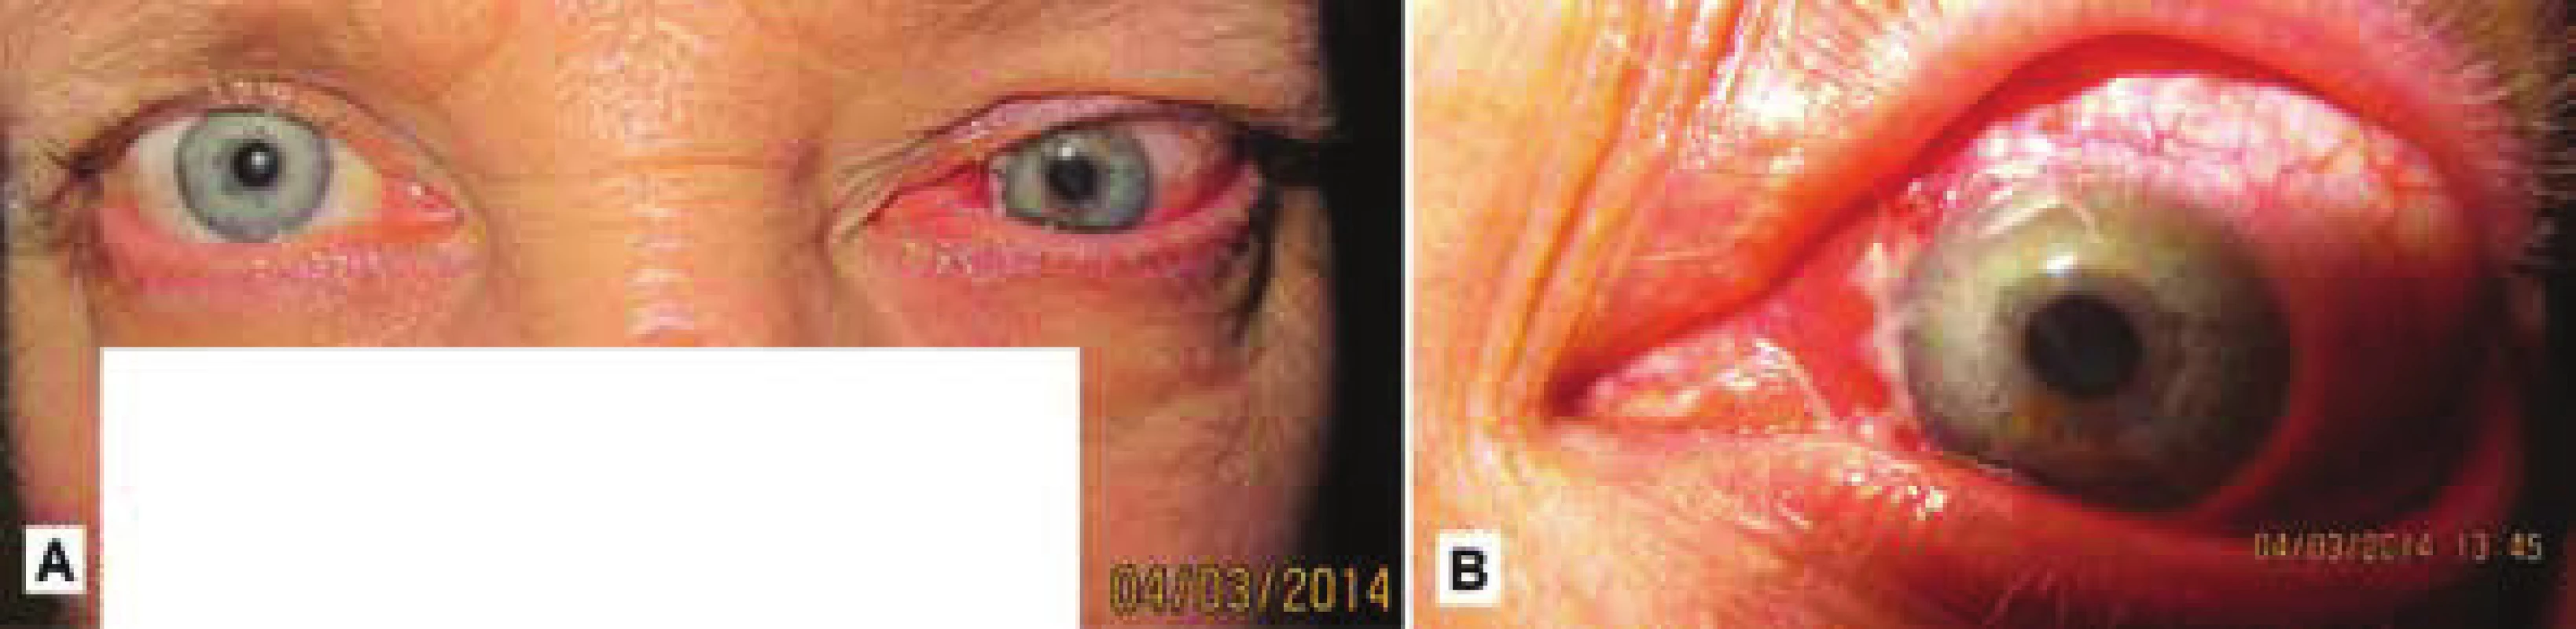 Klinický
obraz u toho
istého pacienta
v marci 2014 –
progresia s tendenciou
infiltrácie
do očnice